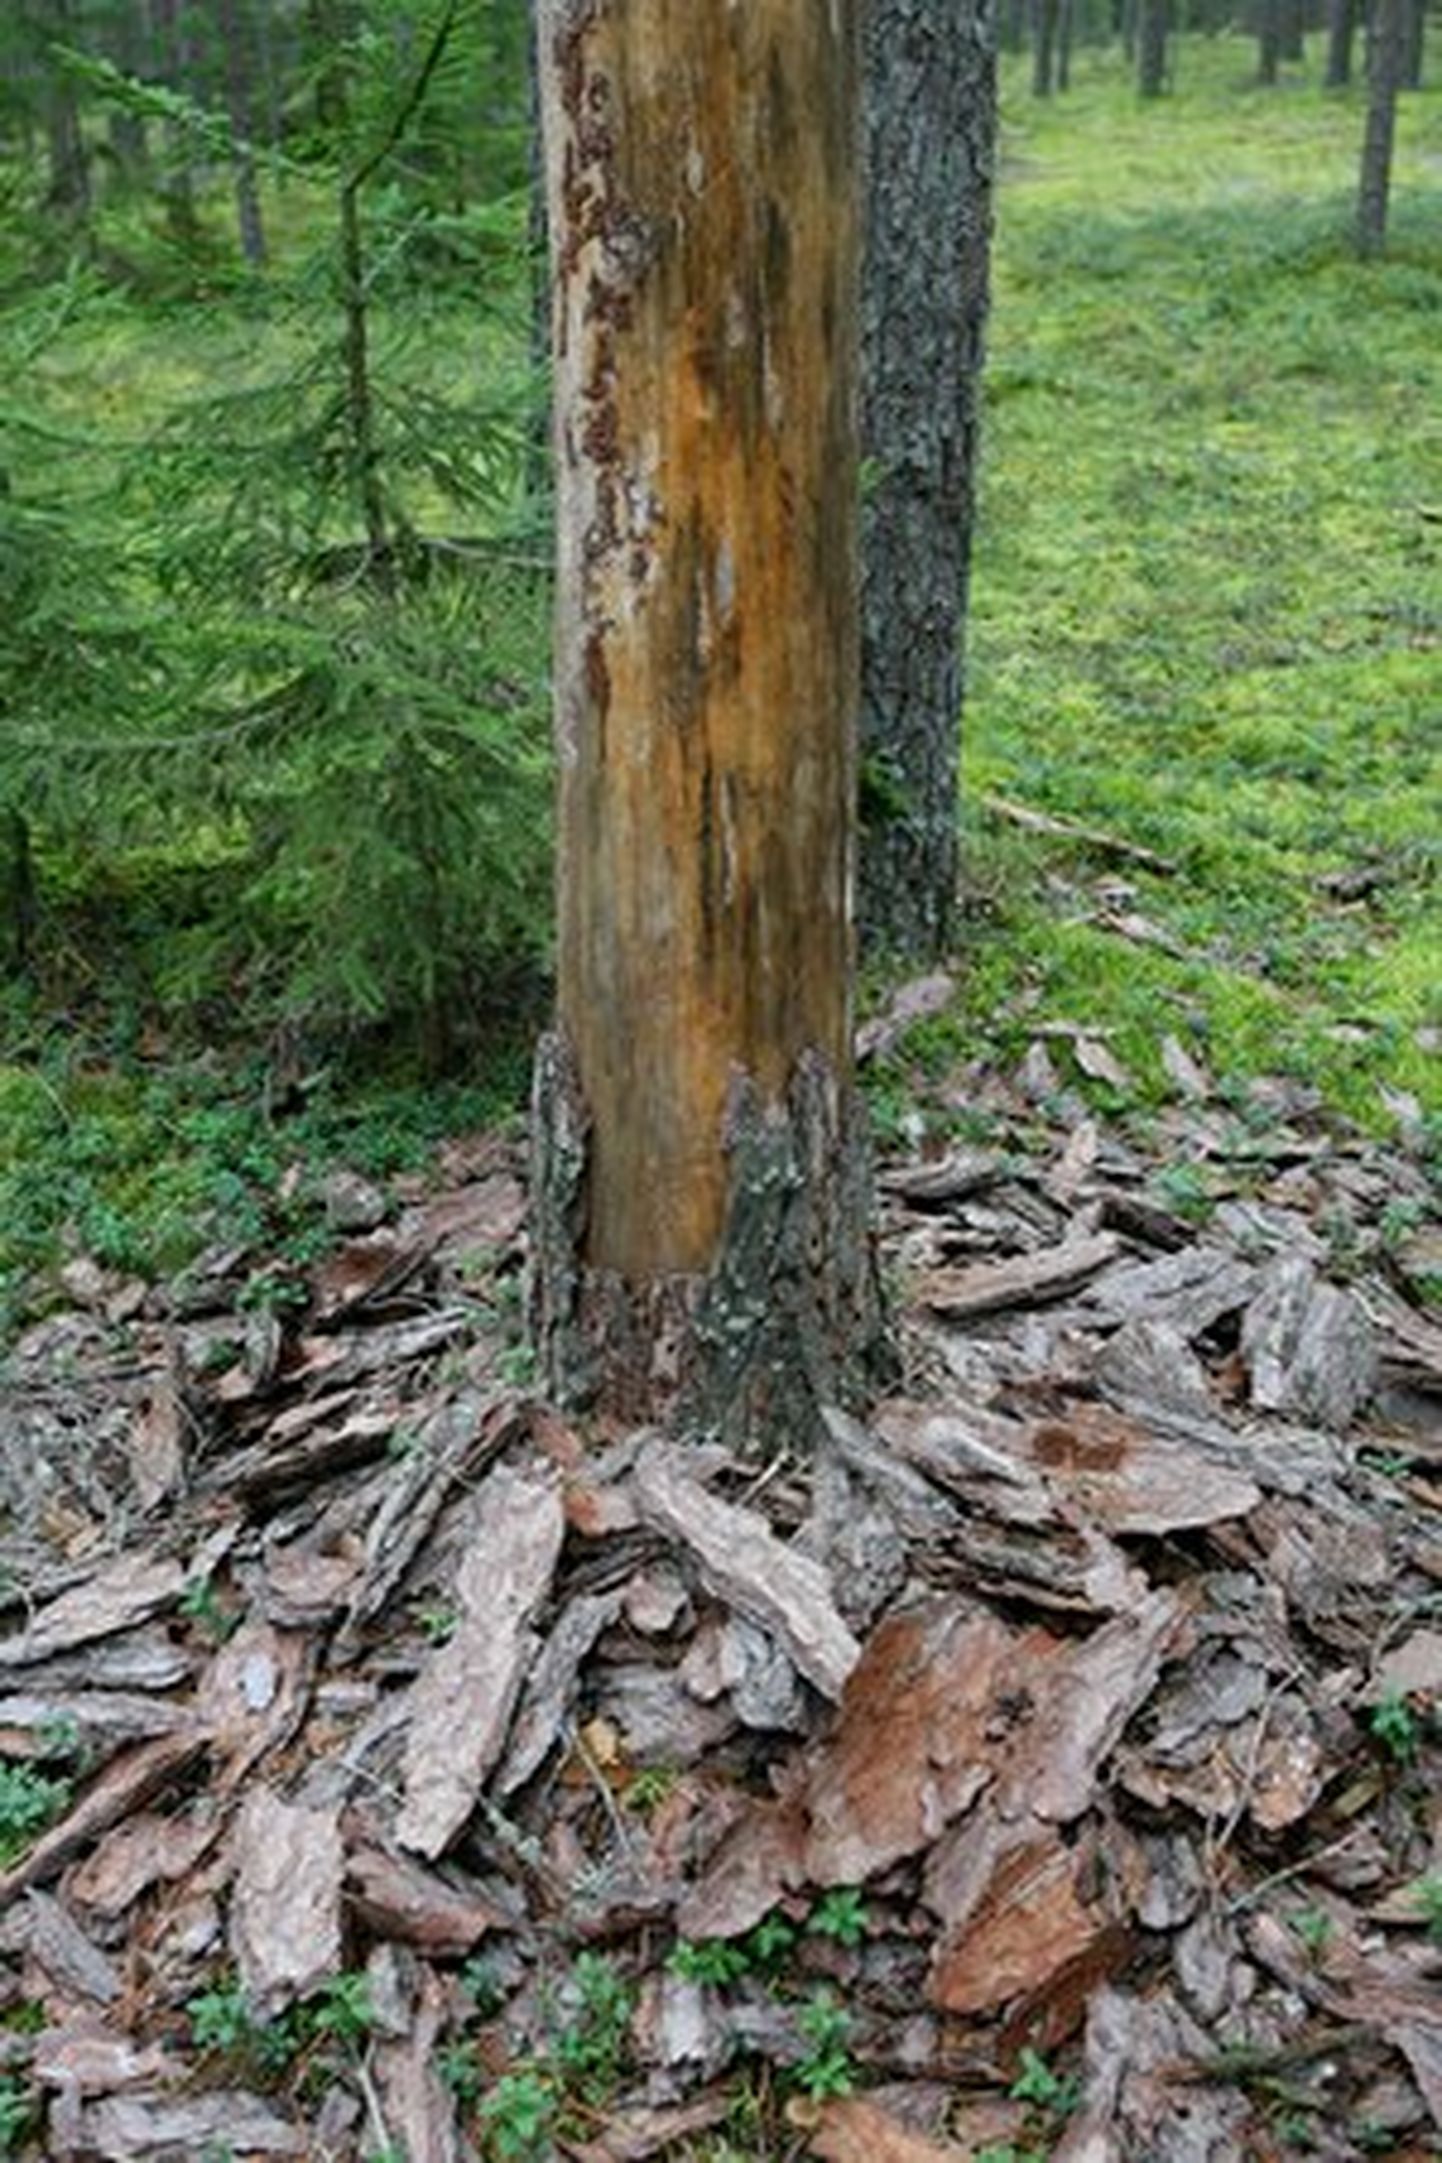 Aasta tegematajätmiseks nimetasid metsaomanikud riigipoolse pika vaate puudumise metsakahjustuste seire korraldamisel ja kaitsealadel levivate üraskikahjude ignoreerimise.